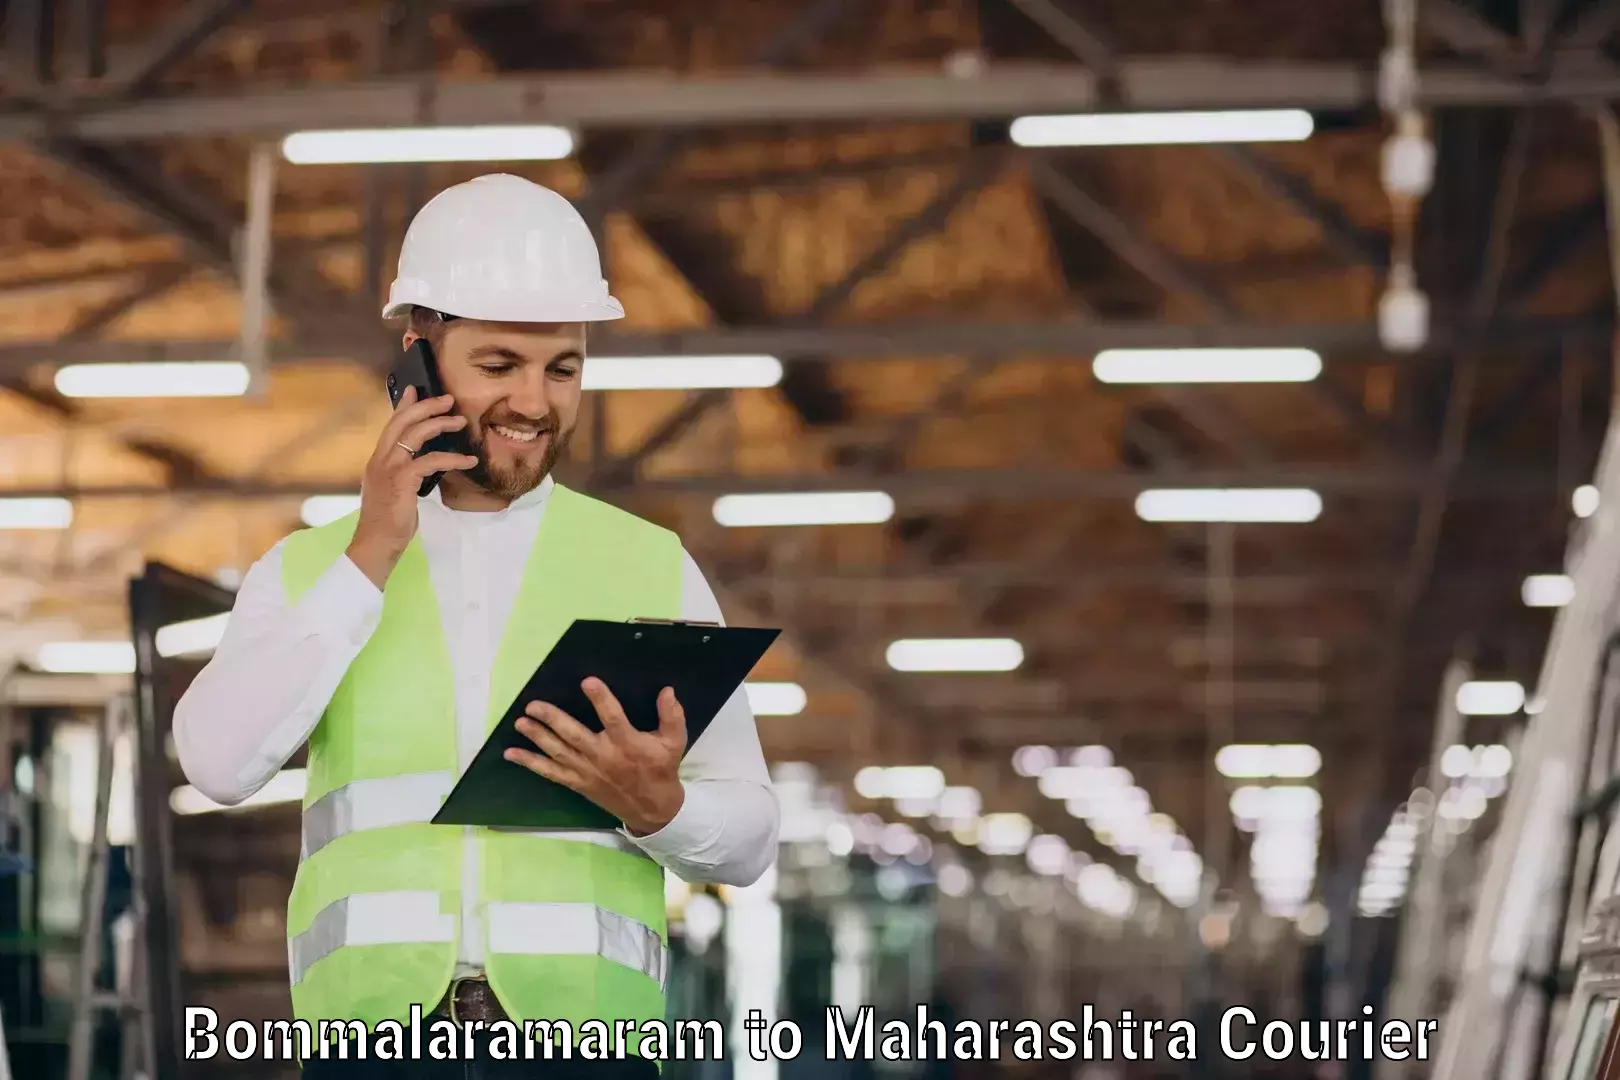 Easy access courier services Bommalaramaram to Maharashtra